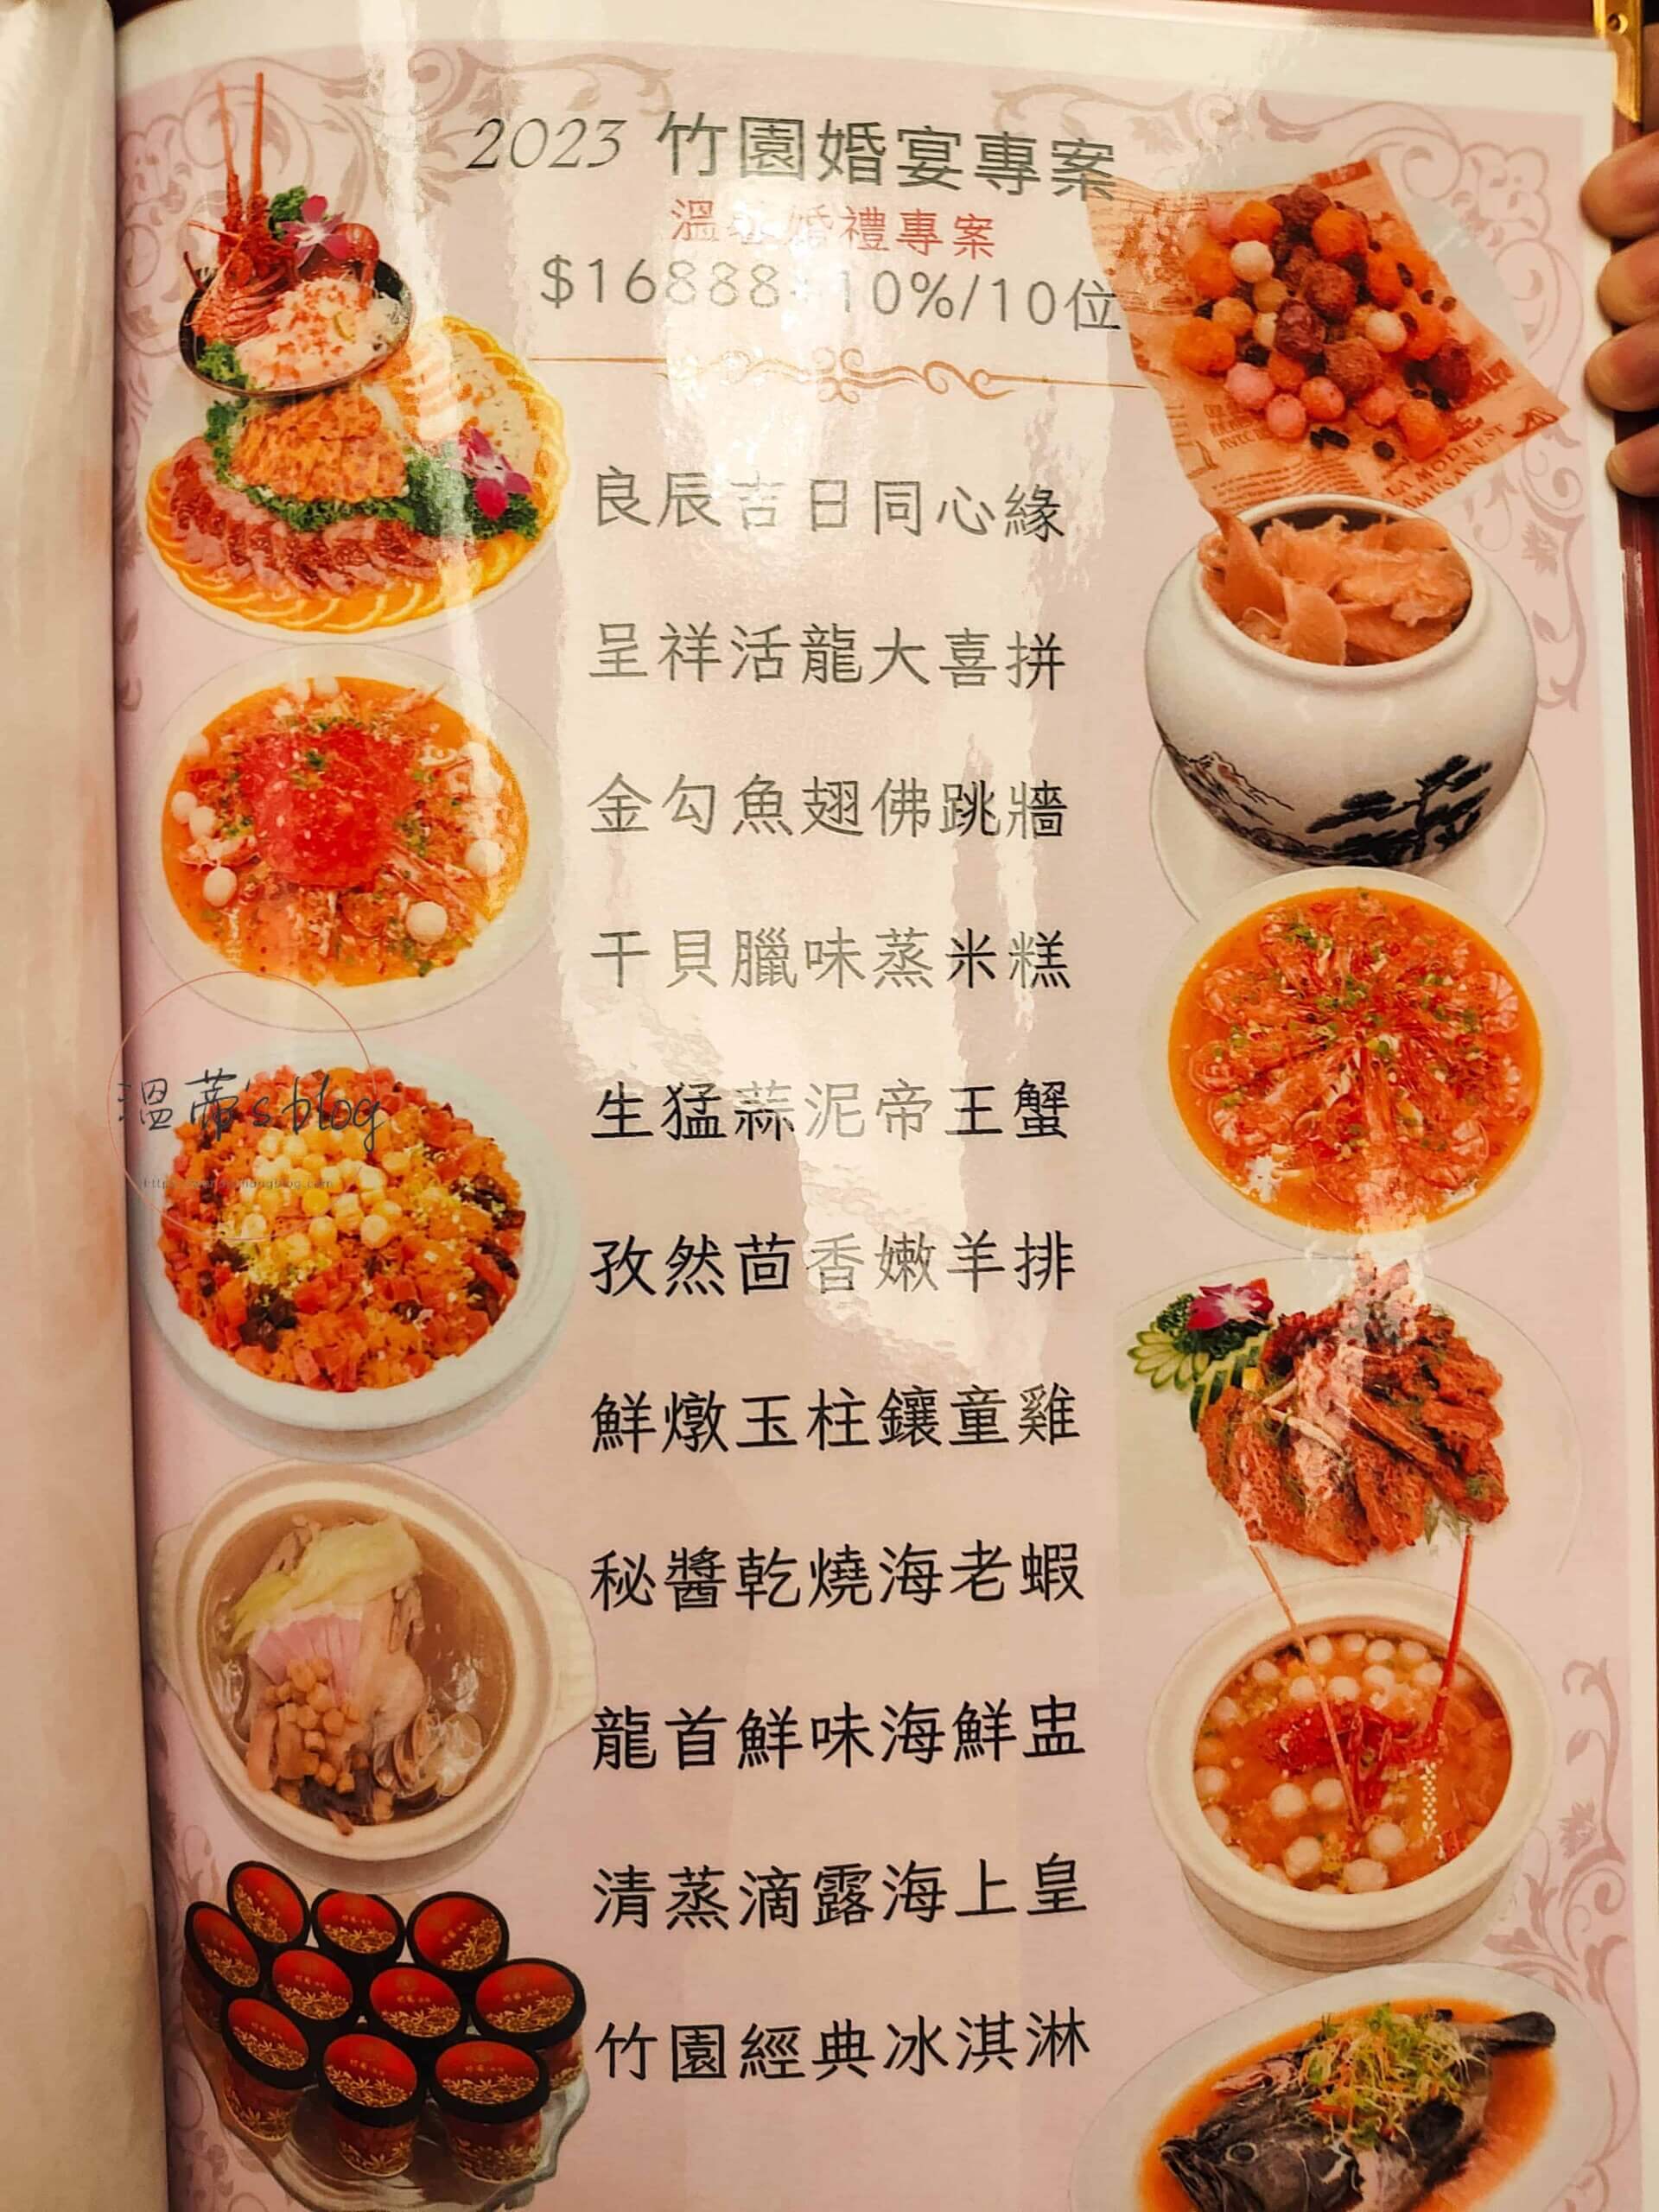 八德竹園婚宴餐廳菜單